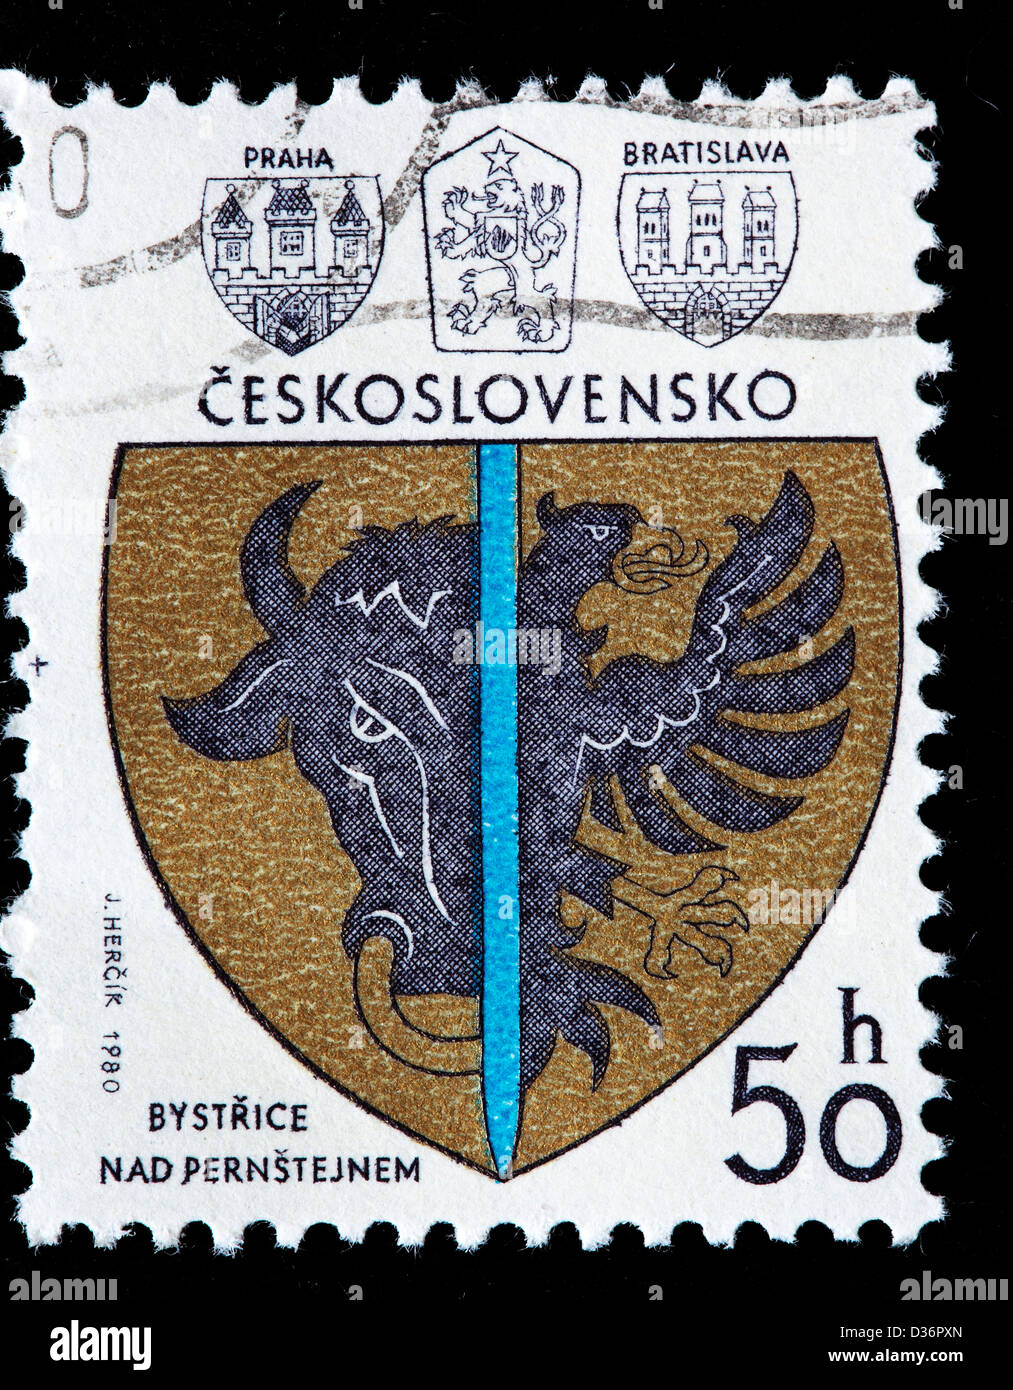 Bystrice Nad Pernstejnem, arms, postage stamp, Czechoslovakia, 1980 Stock Photo